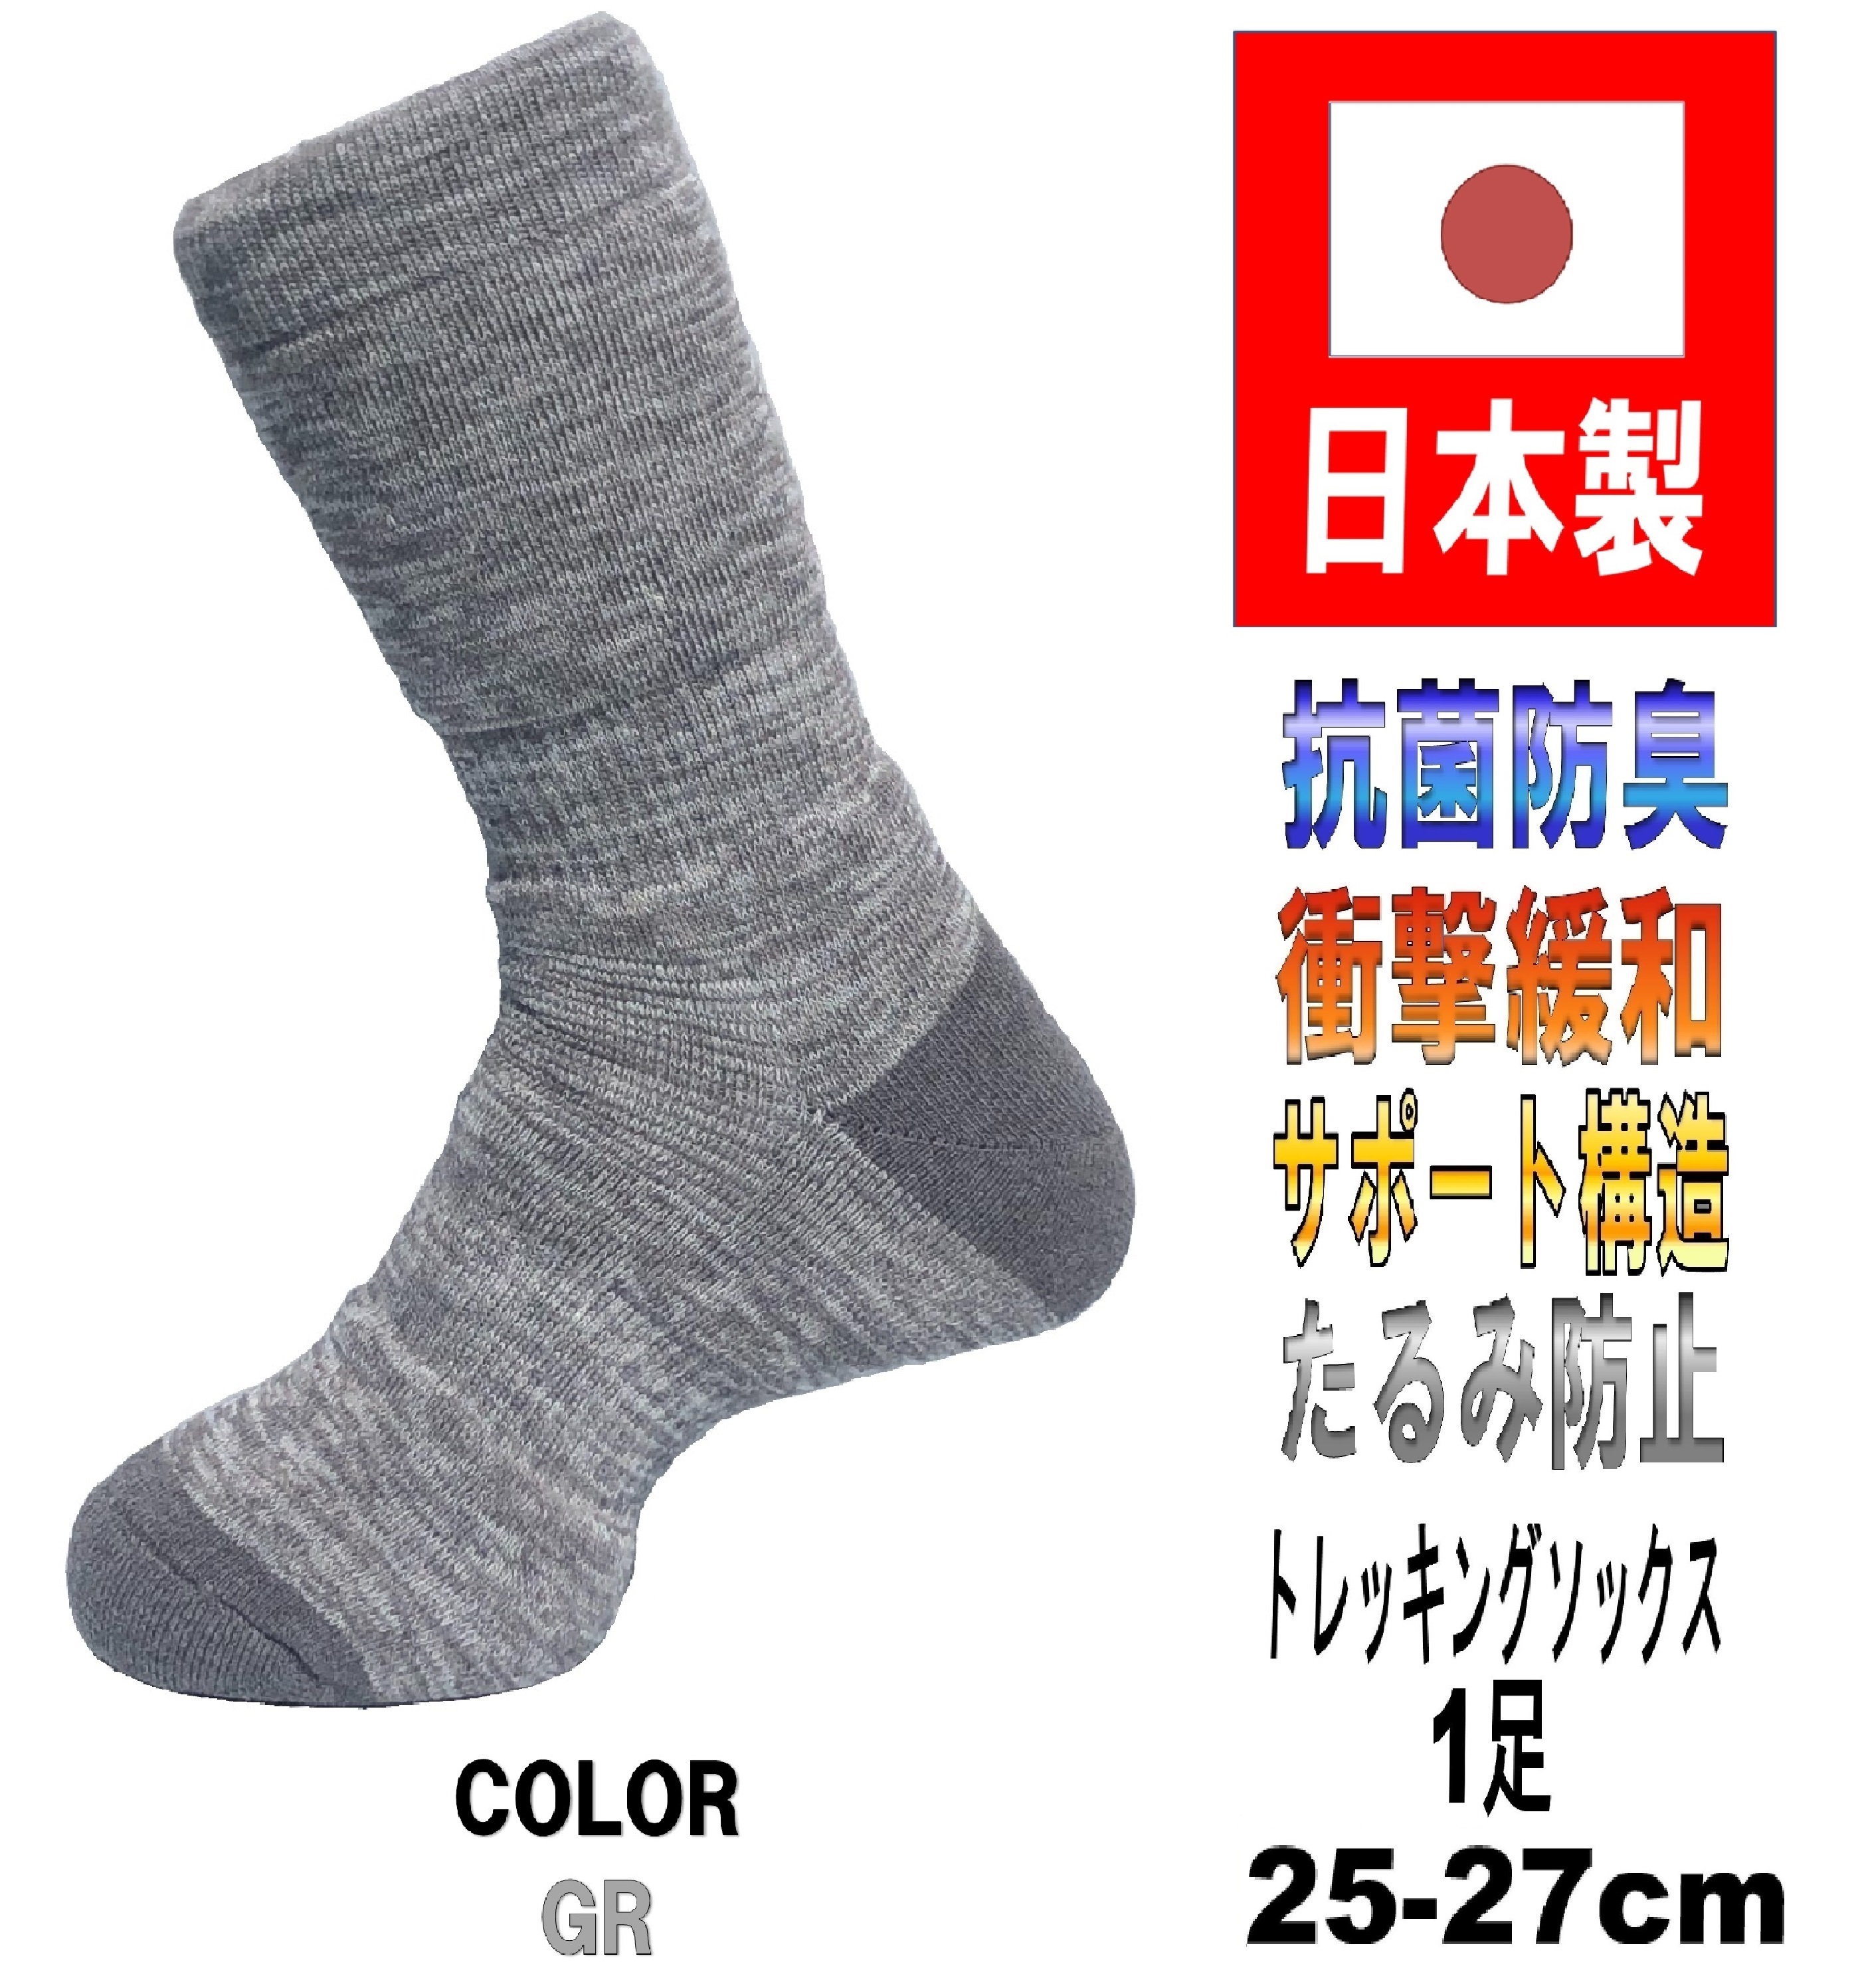 日本製 メンズ トレッキングソックス 25-27cm 5カラー 抗菌防臭機能付